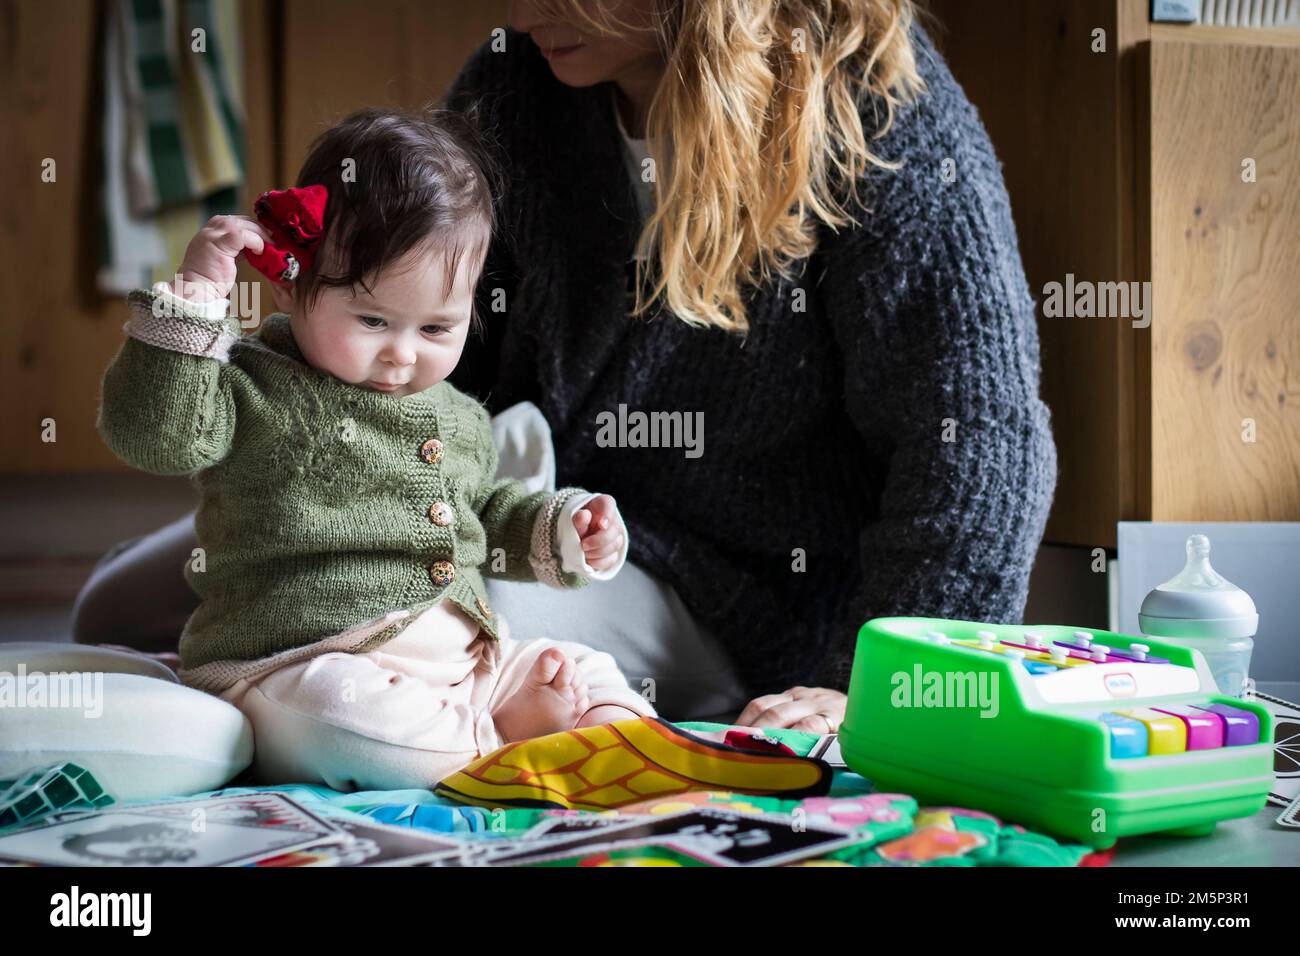 Das niedliche Baby spielt auf einem Spielvorleger neben seiner Mutter und hält ihre roten Socken statt ihrer Spielzeuge vor sich. Echte Umgebung für Zuhause Stockfoto